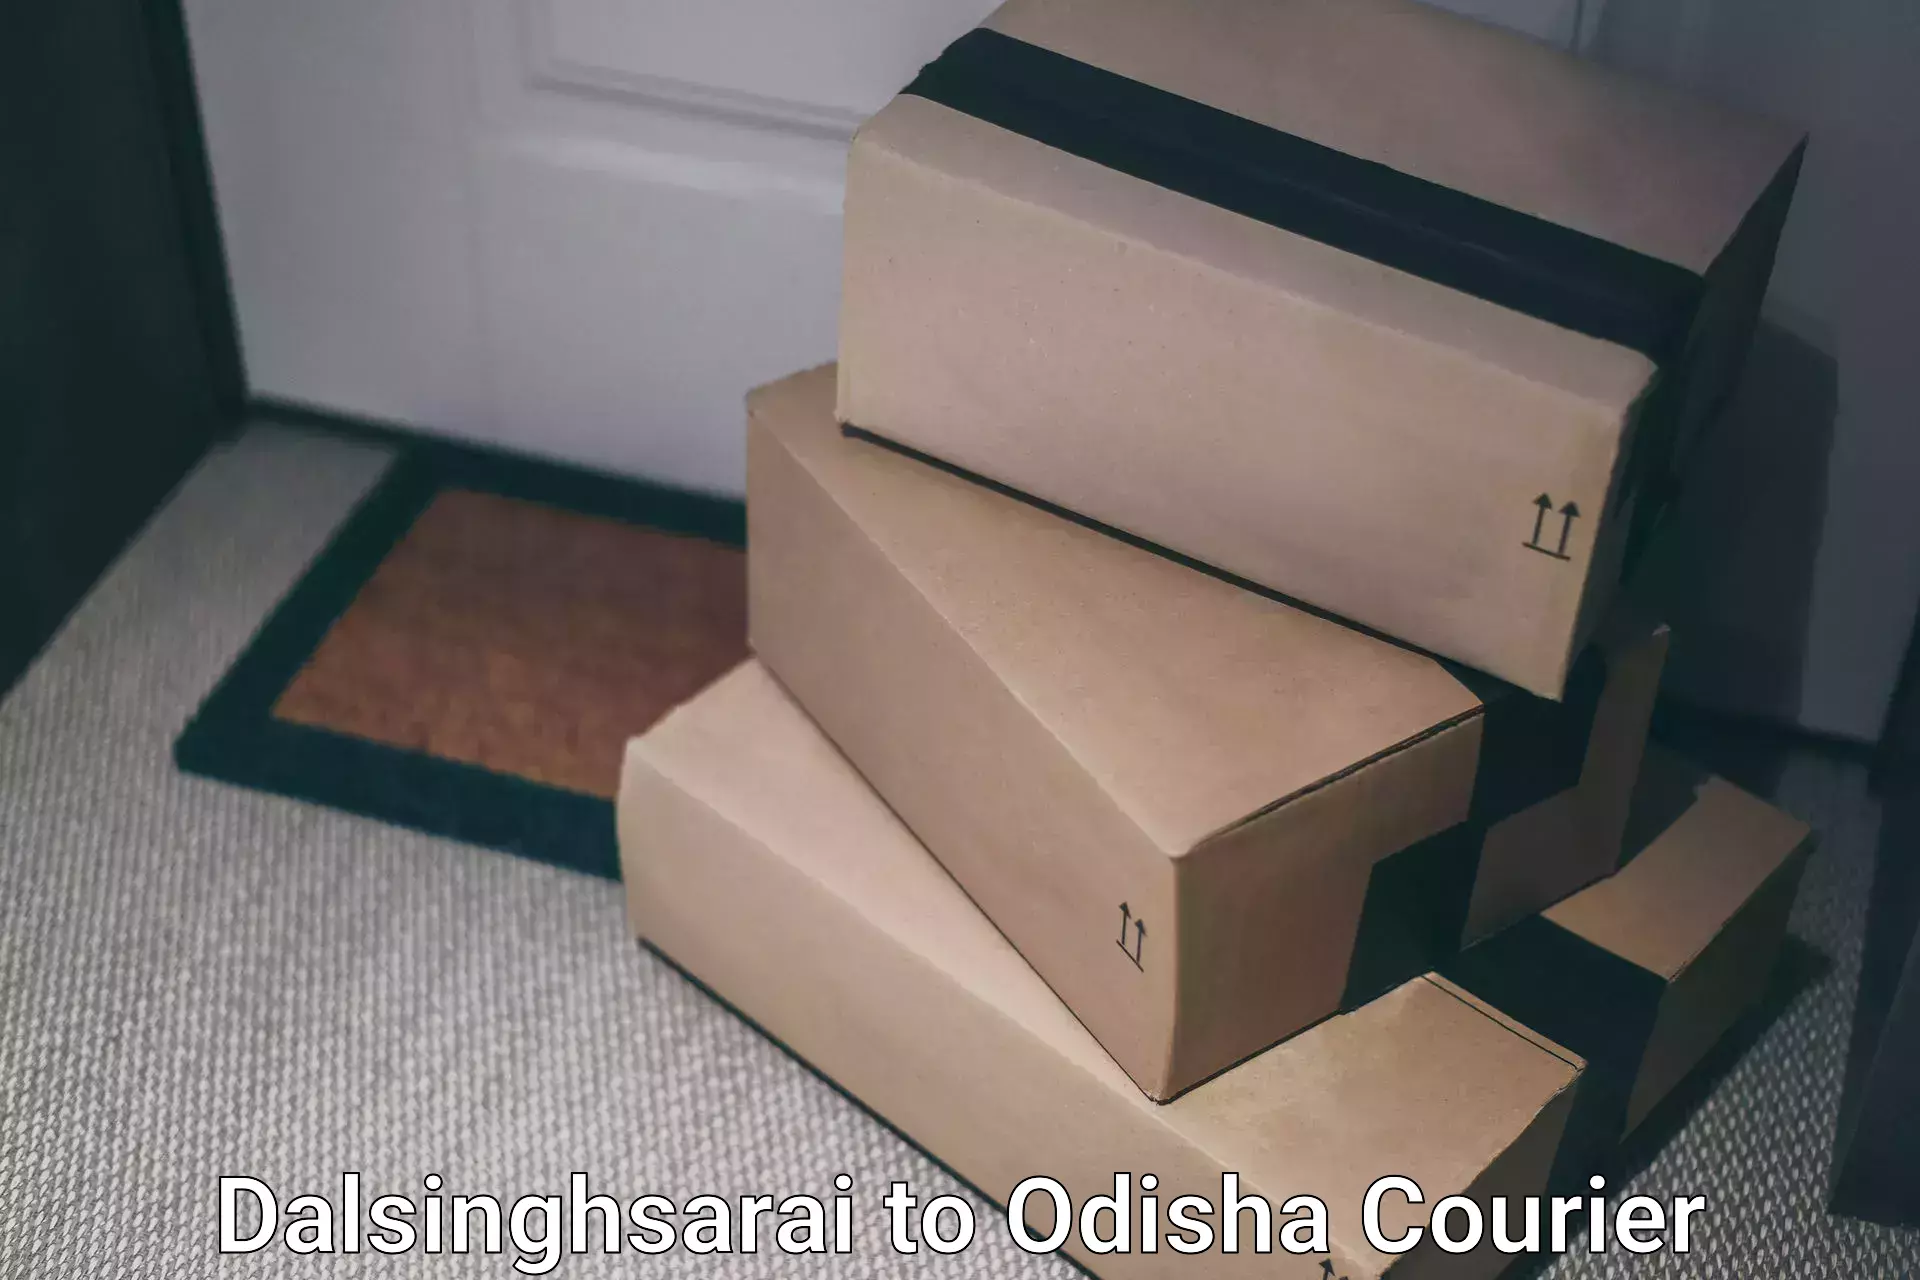 Courier service comparison Dalsinghsarai to Khaprakhol